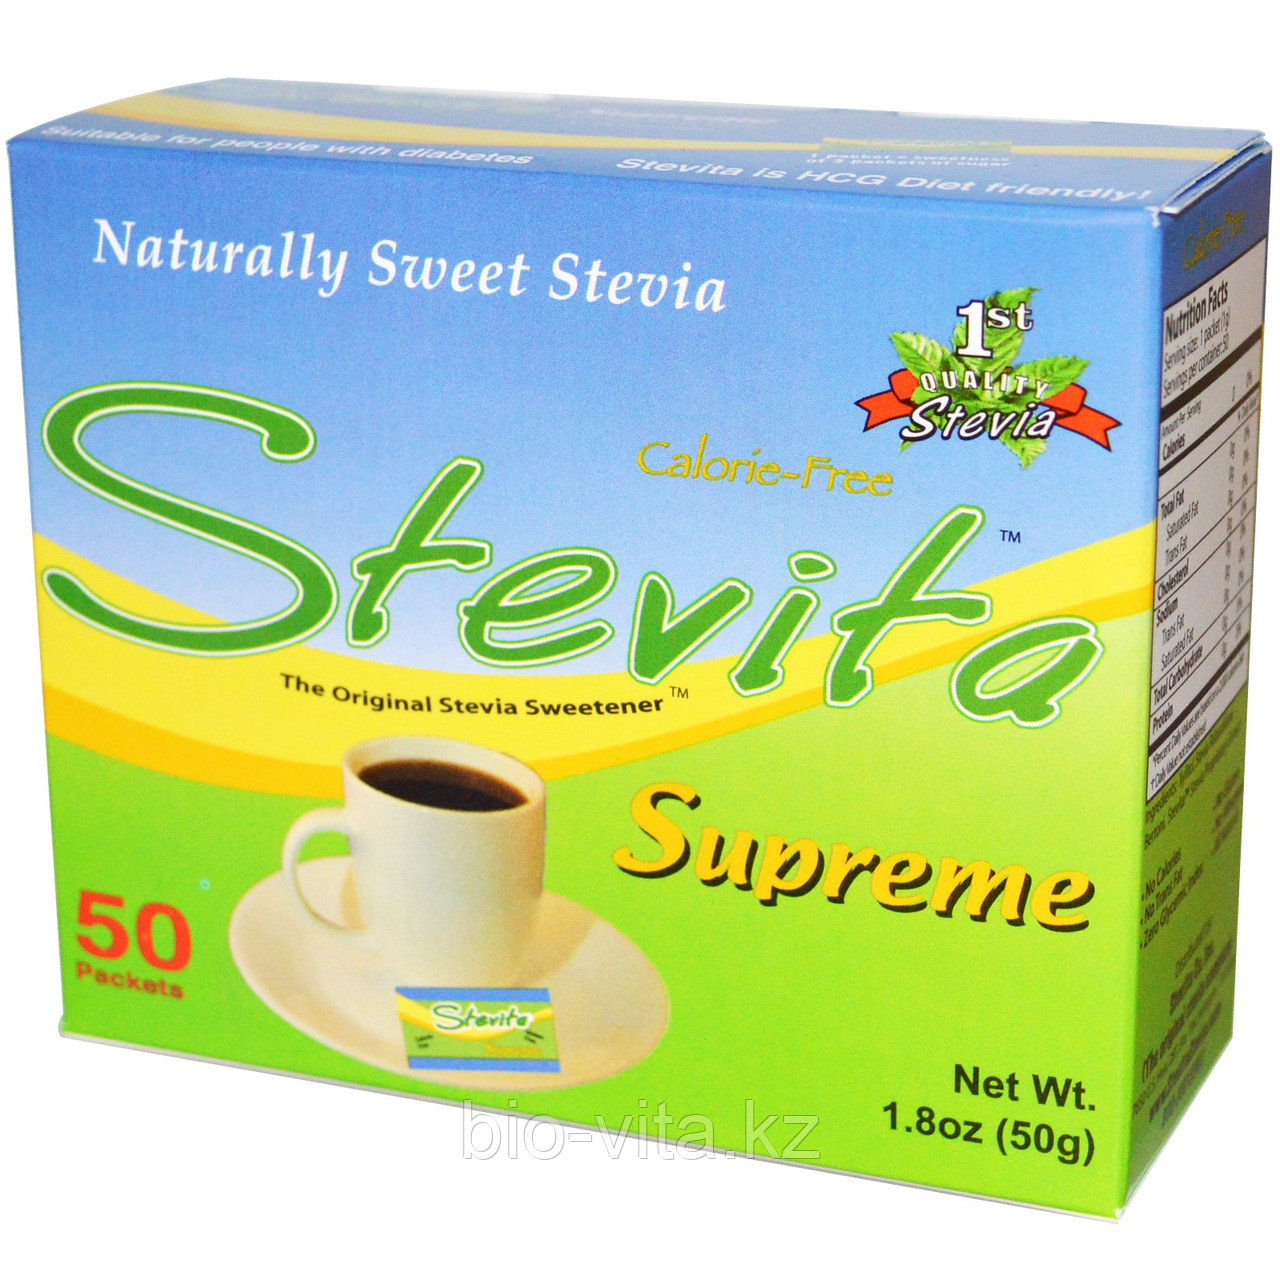 Stevita, Высококачественная стевия, Натуральный сахарозаменитель. 50 пакетиков.